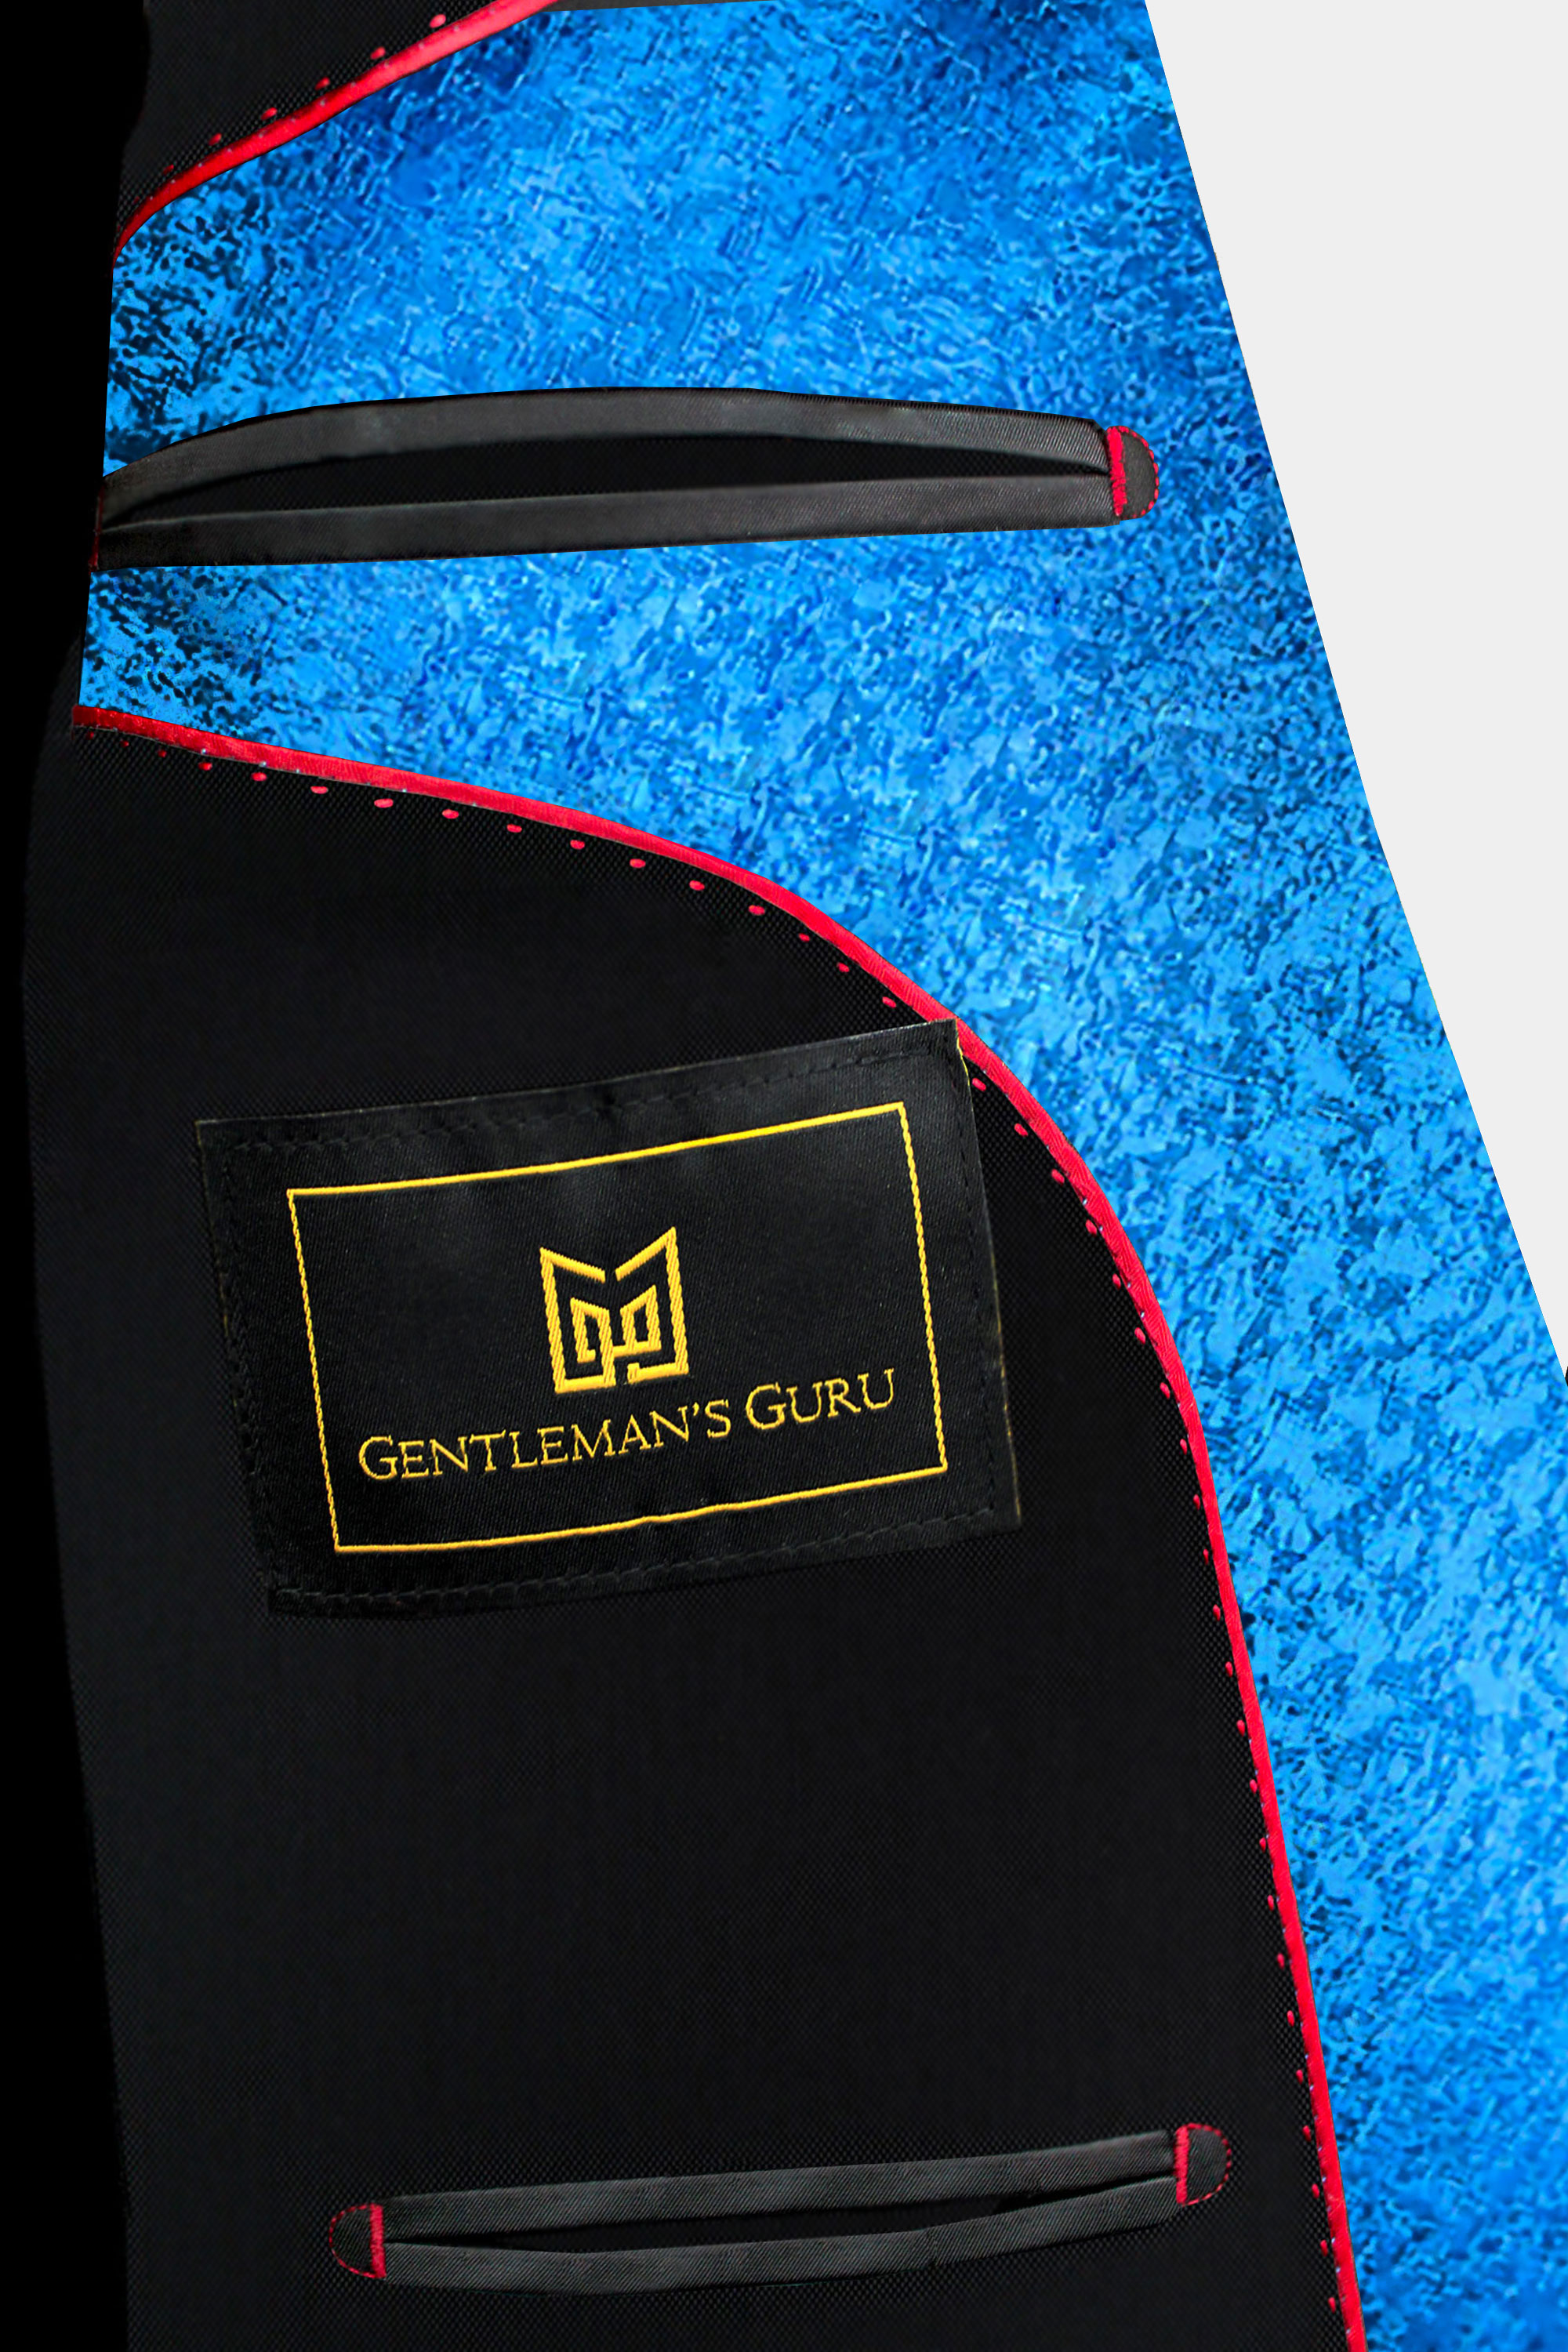 inside-Blue-Double-Breadter-Suit-Jacket-from-Gentlemansguru.com